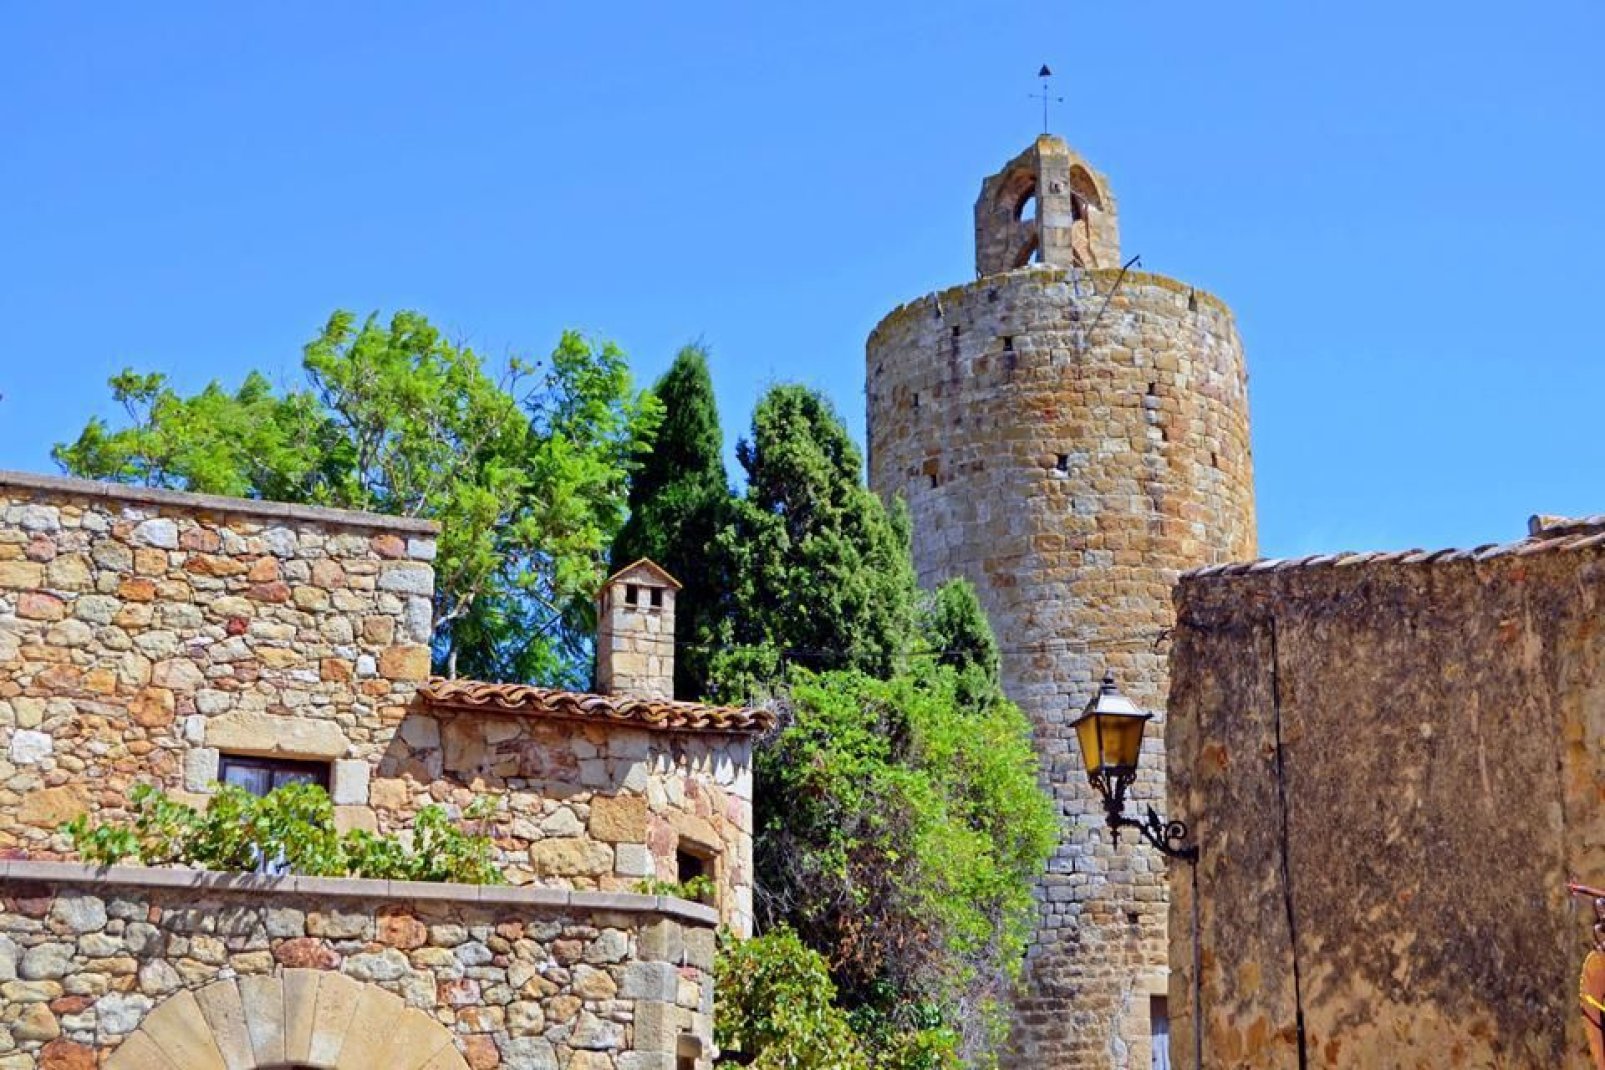 Diese mittelalterliche Stadt wurde vollständig restauriert und ist absolut sehenswert.